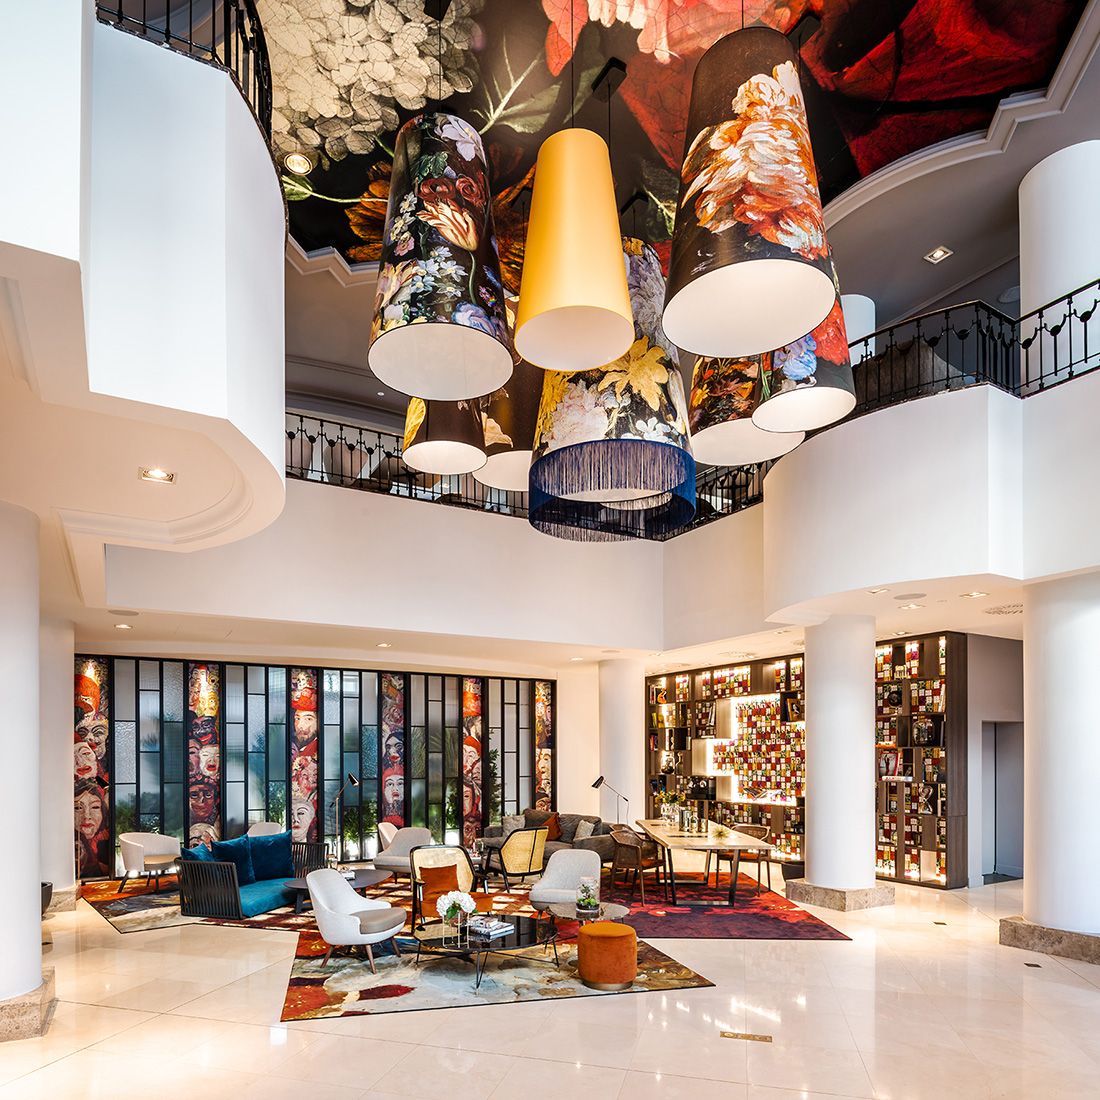 Lobby de l'hôtel 4 étoiles renaissance bruxelles designé par le studio d'architecture d'intérieur jean-phiippe nuel, hotel lifestyle en belgique, décoration colorée